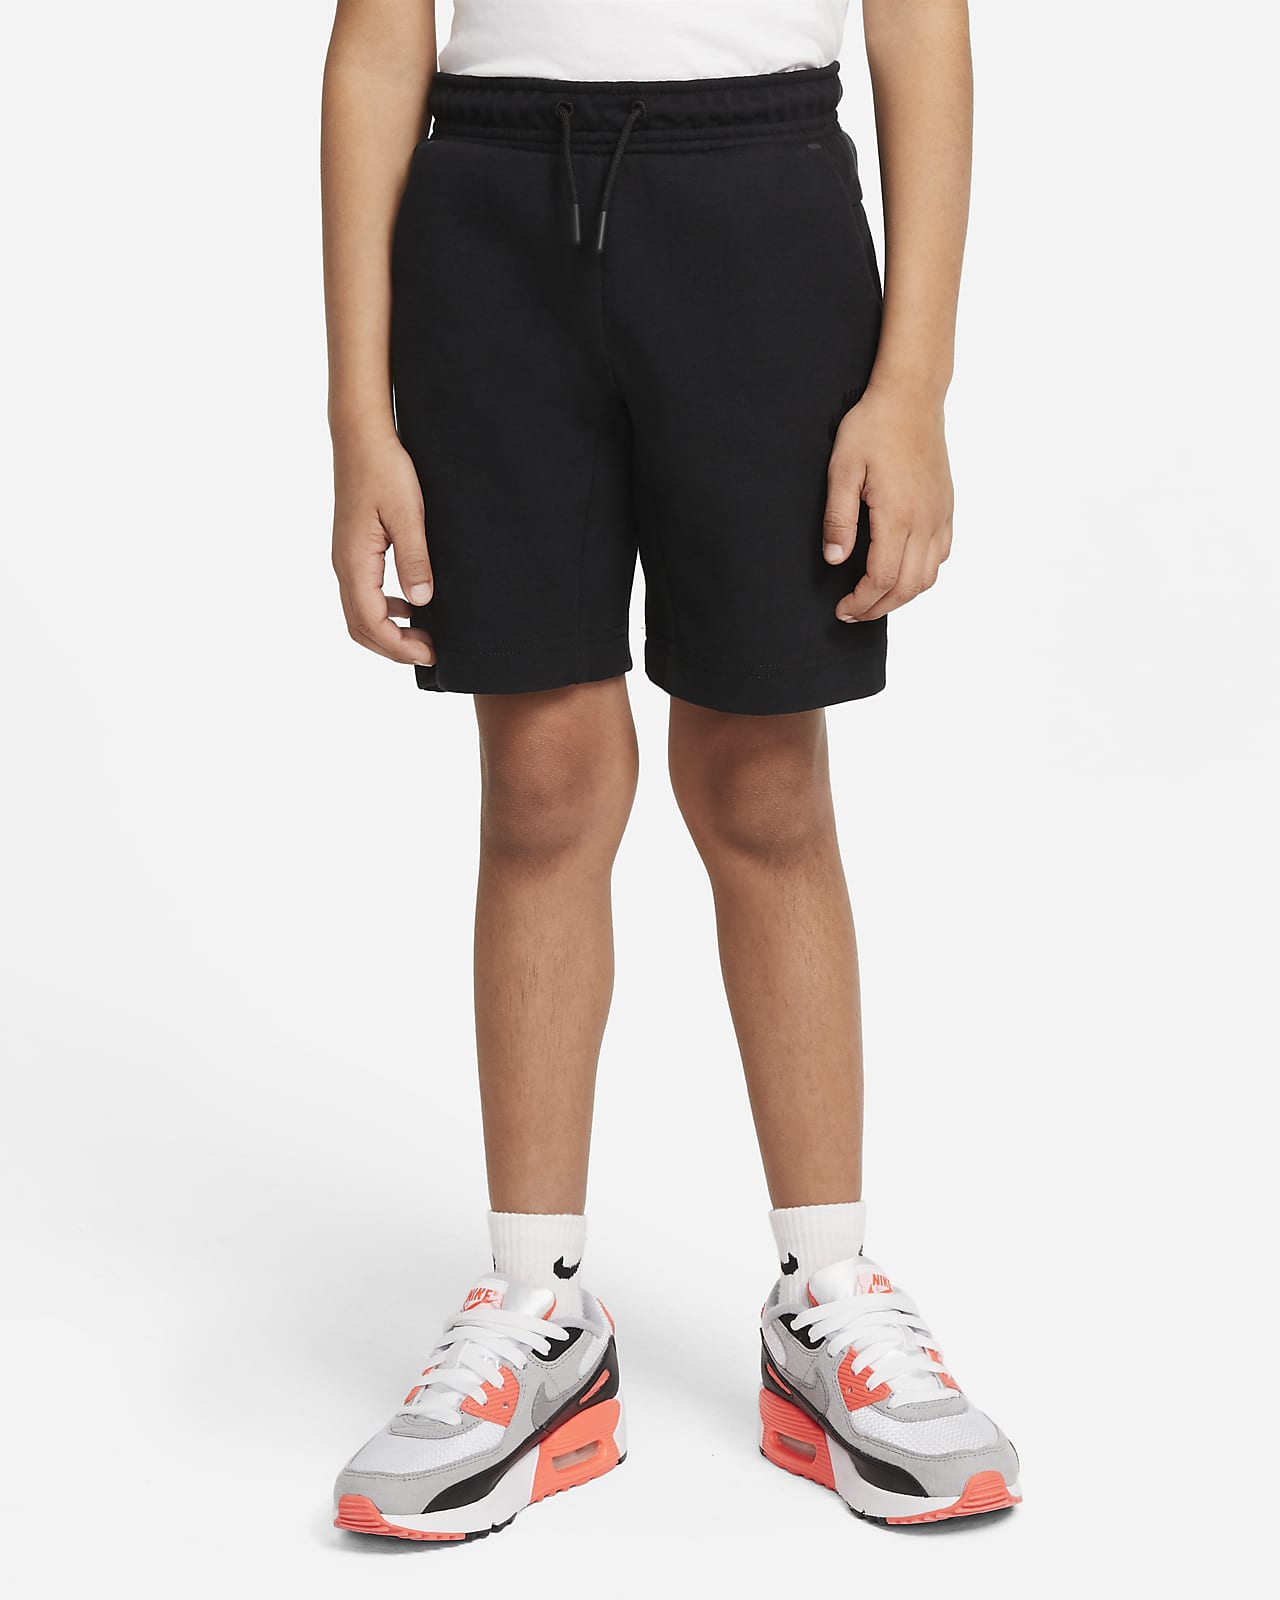 Shorts para niño talla pequeña Nike Sportswear Tech Fleece